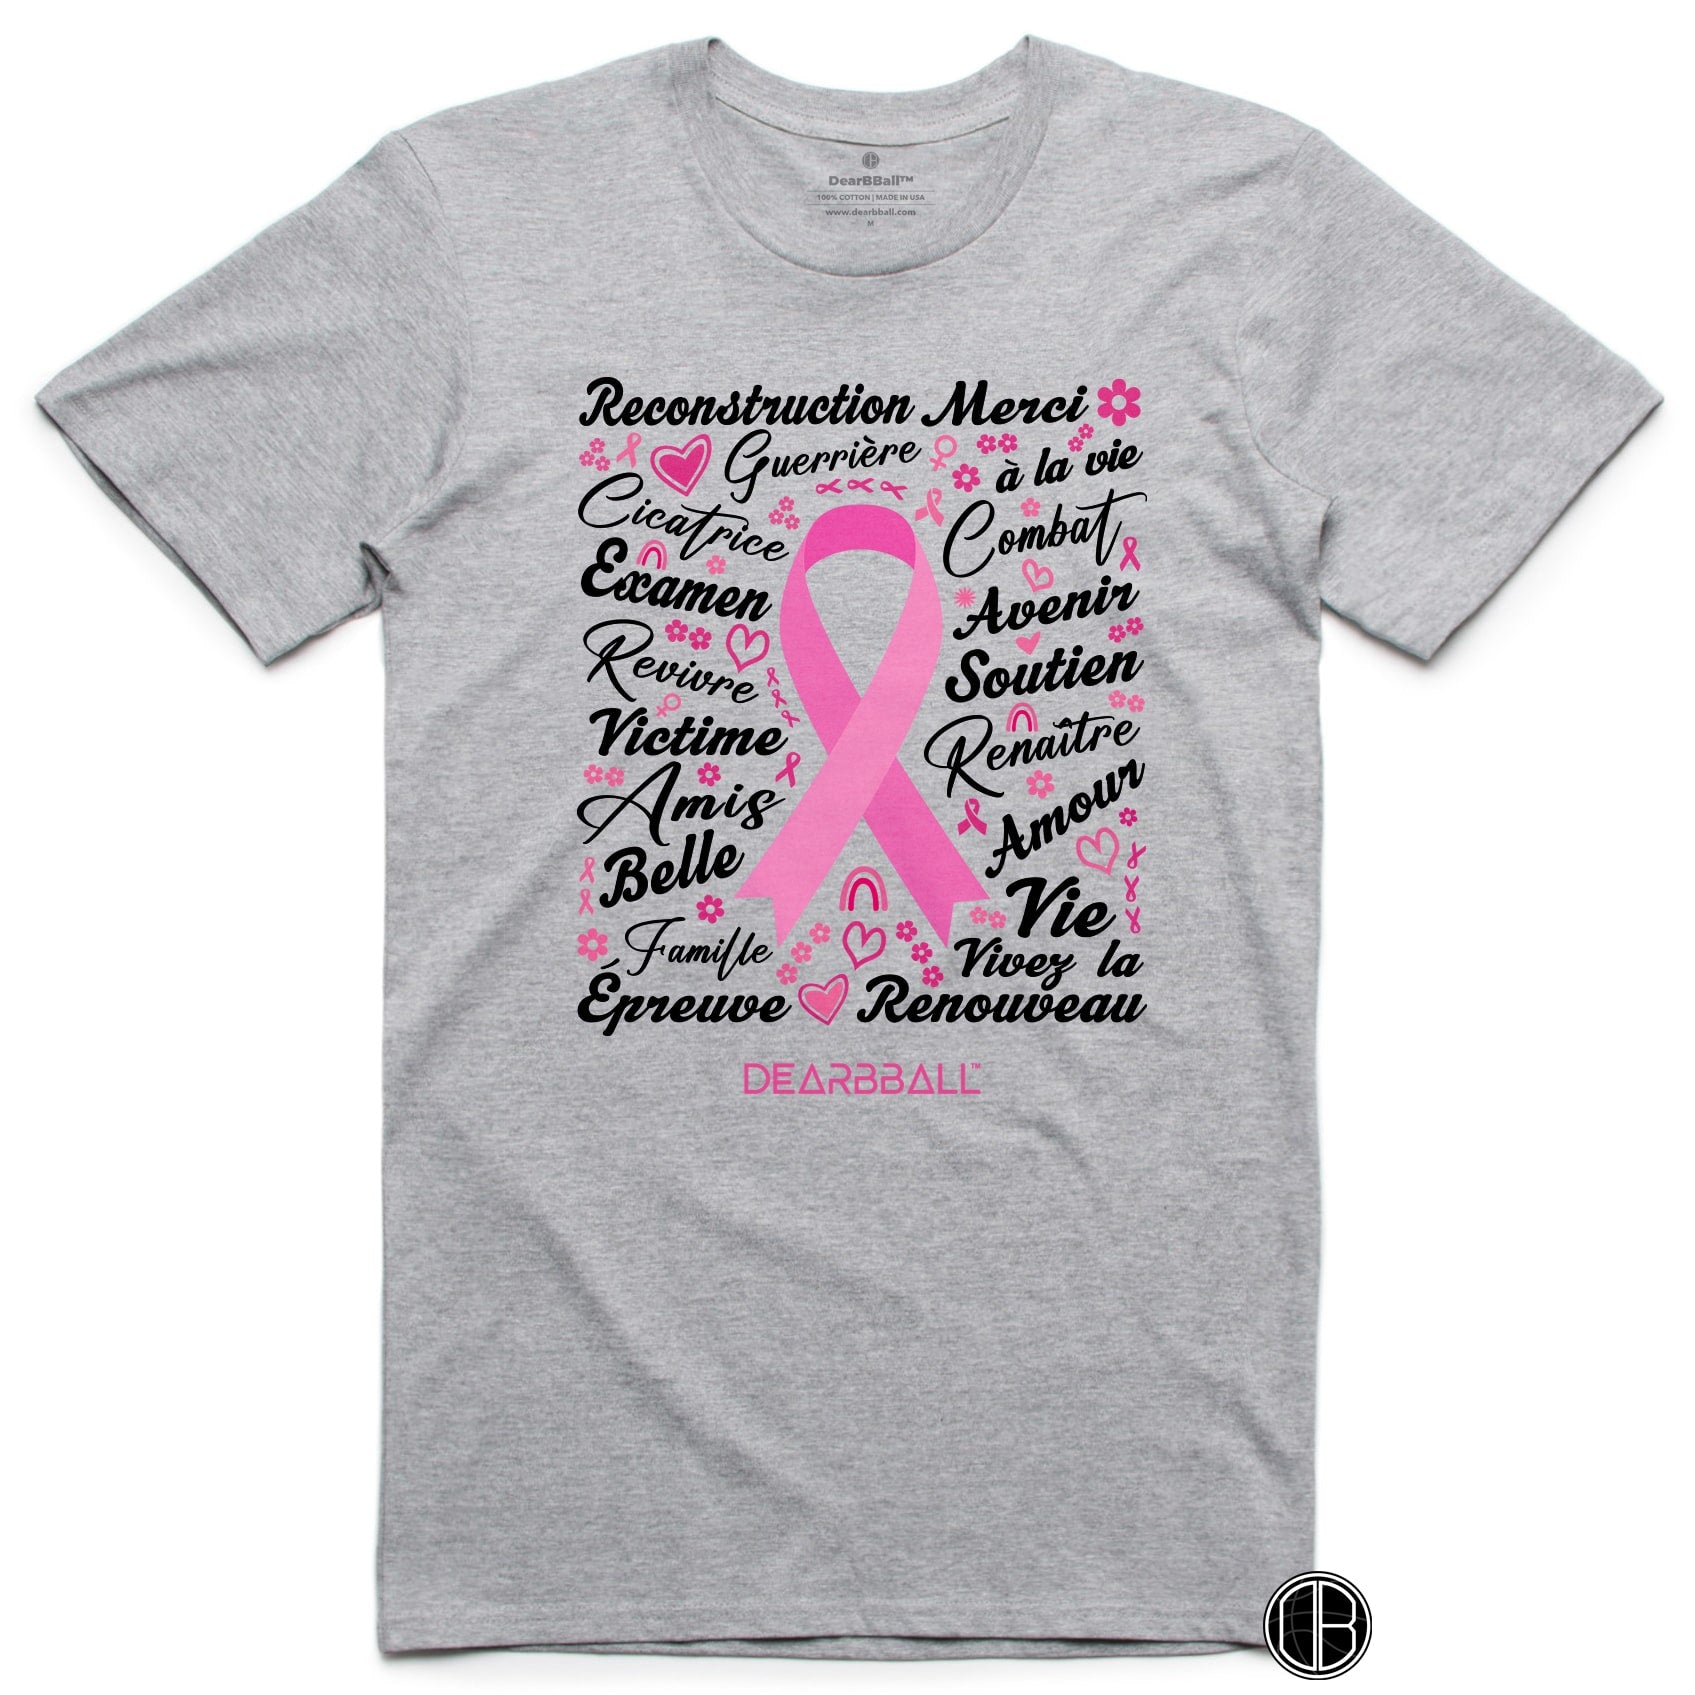 DearBBall T-Shirt - Pink October "Words Matter"